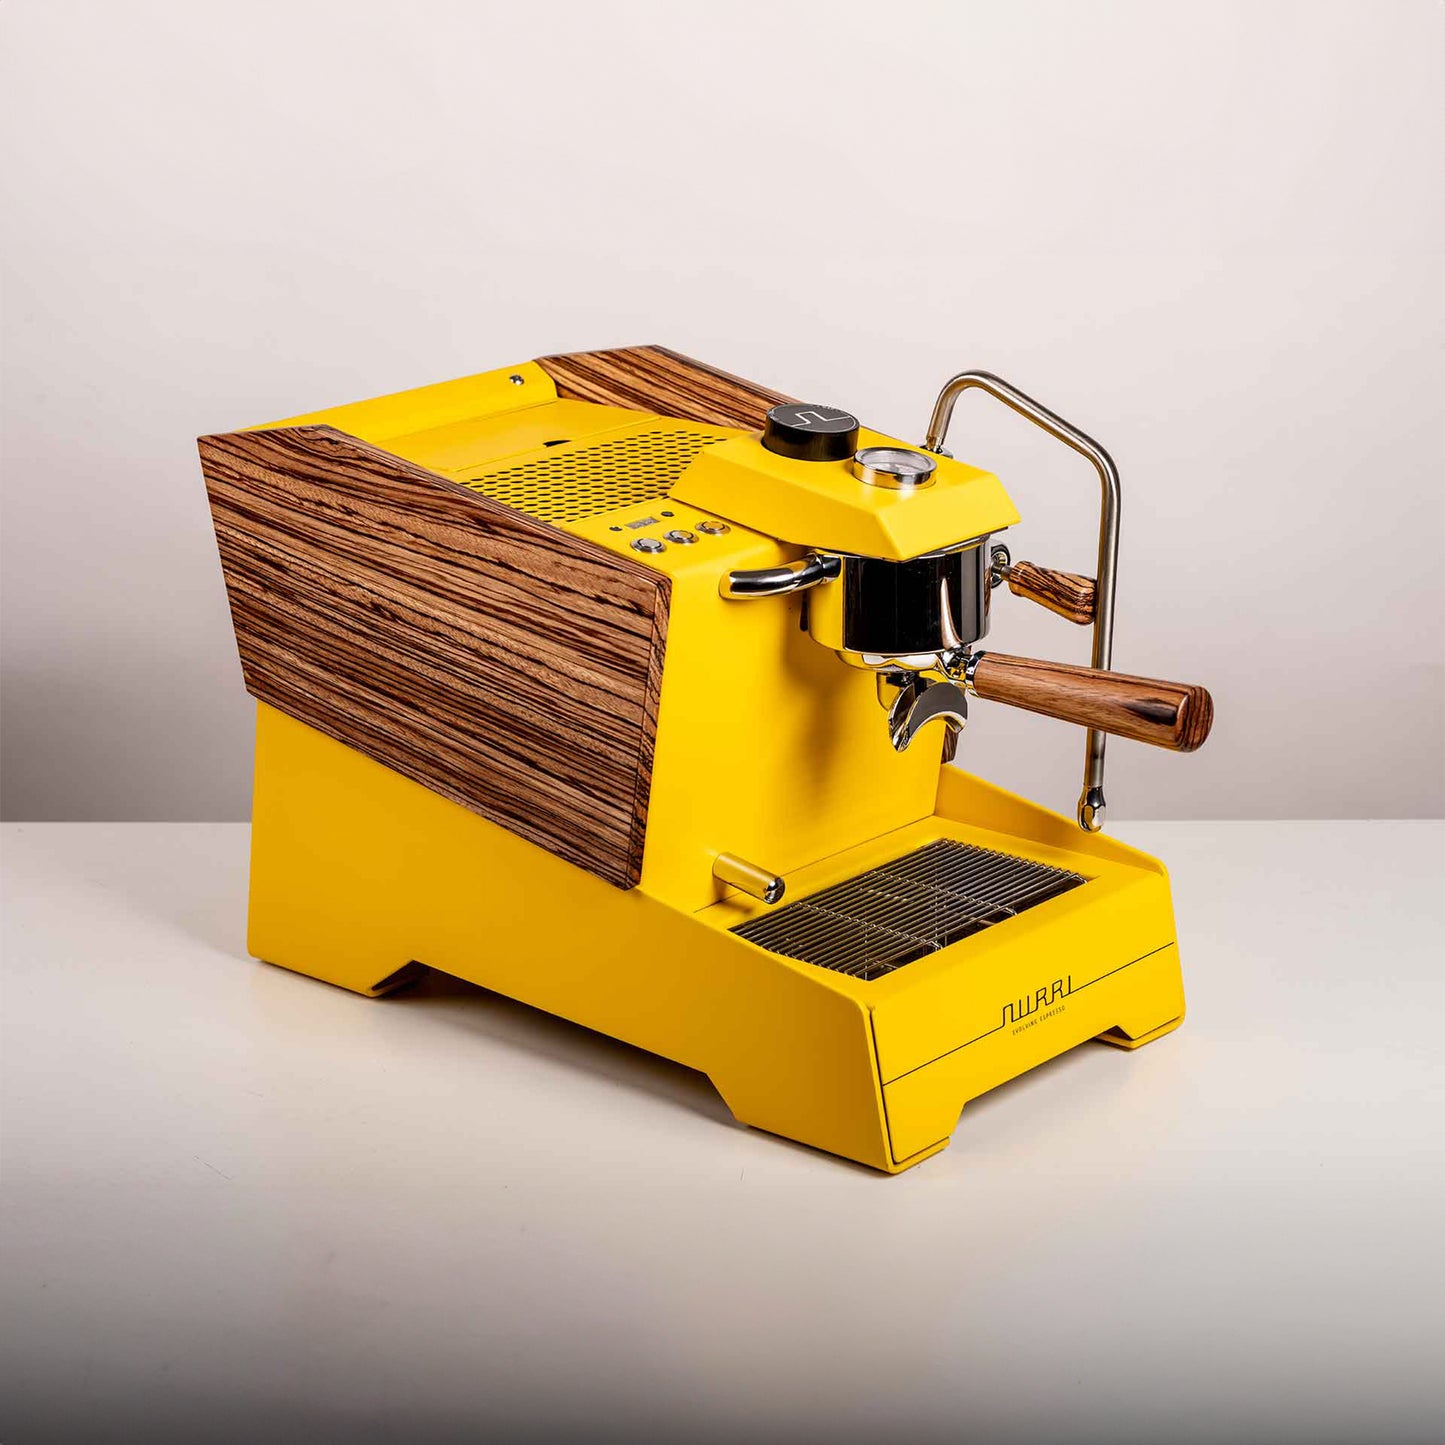 Nurri R Type Espresso Machine